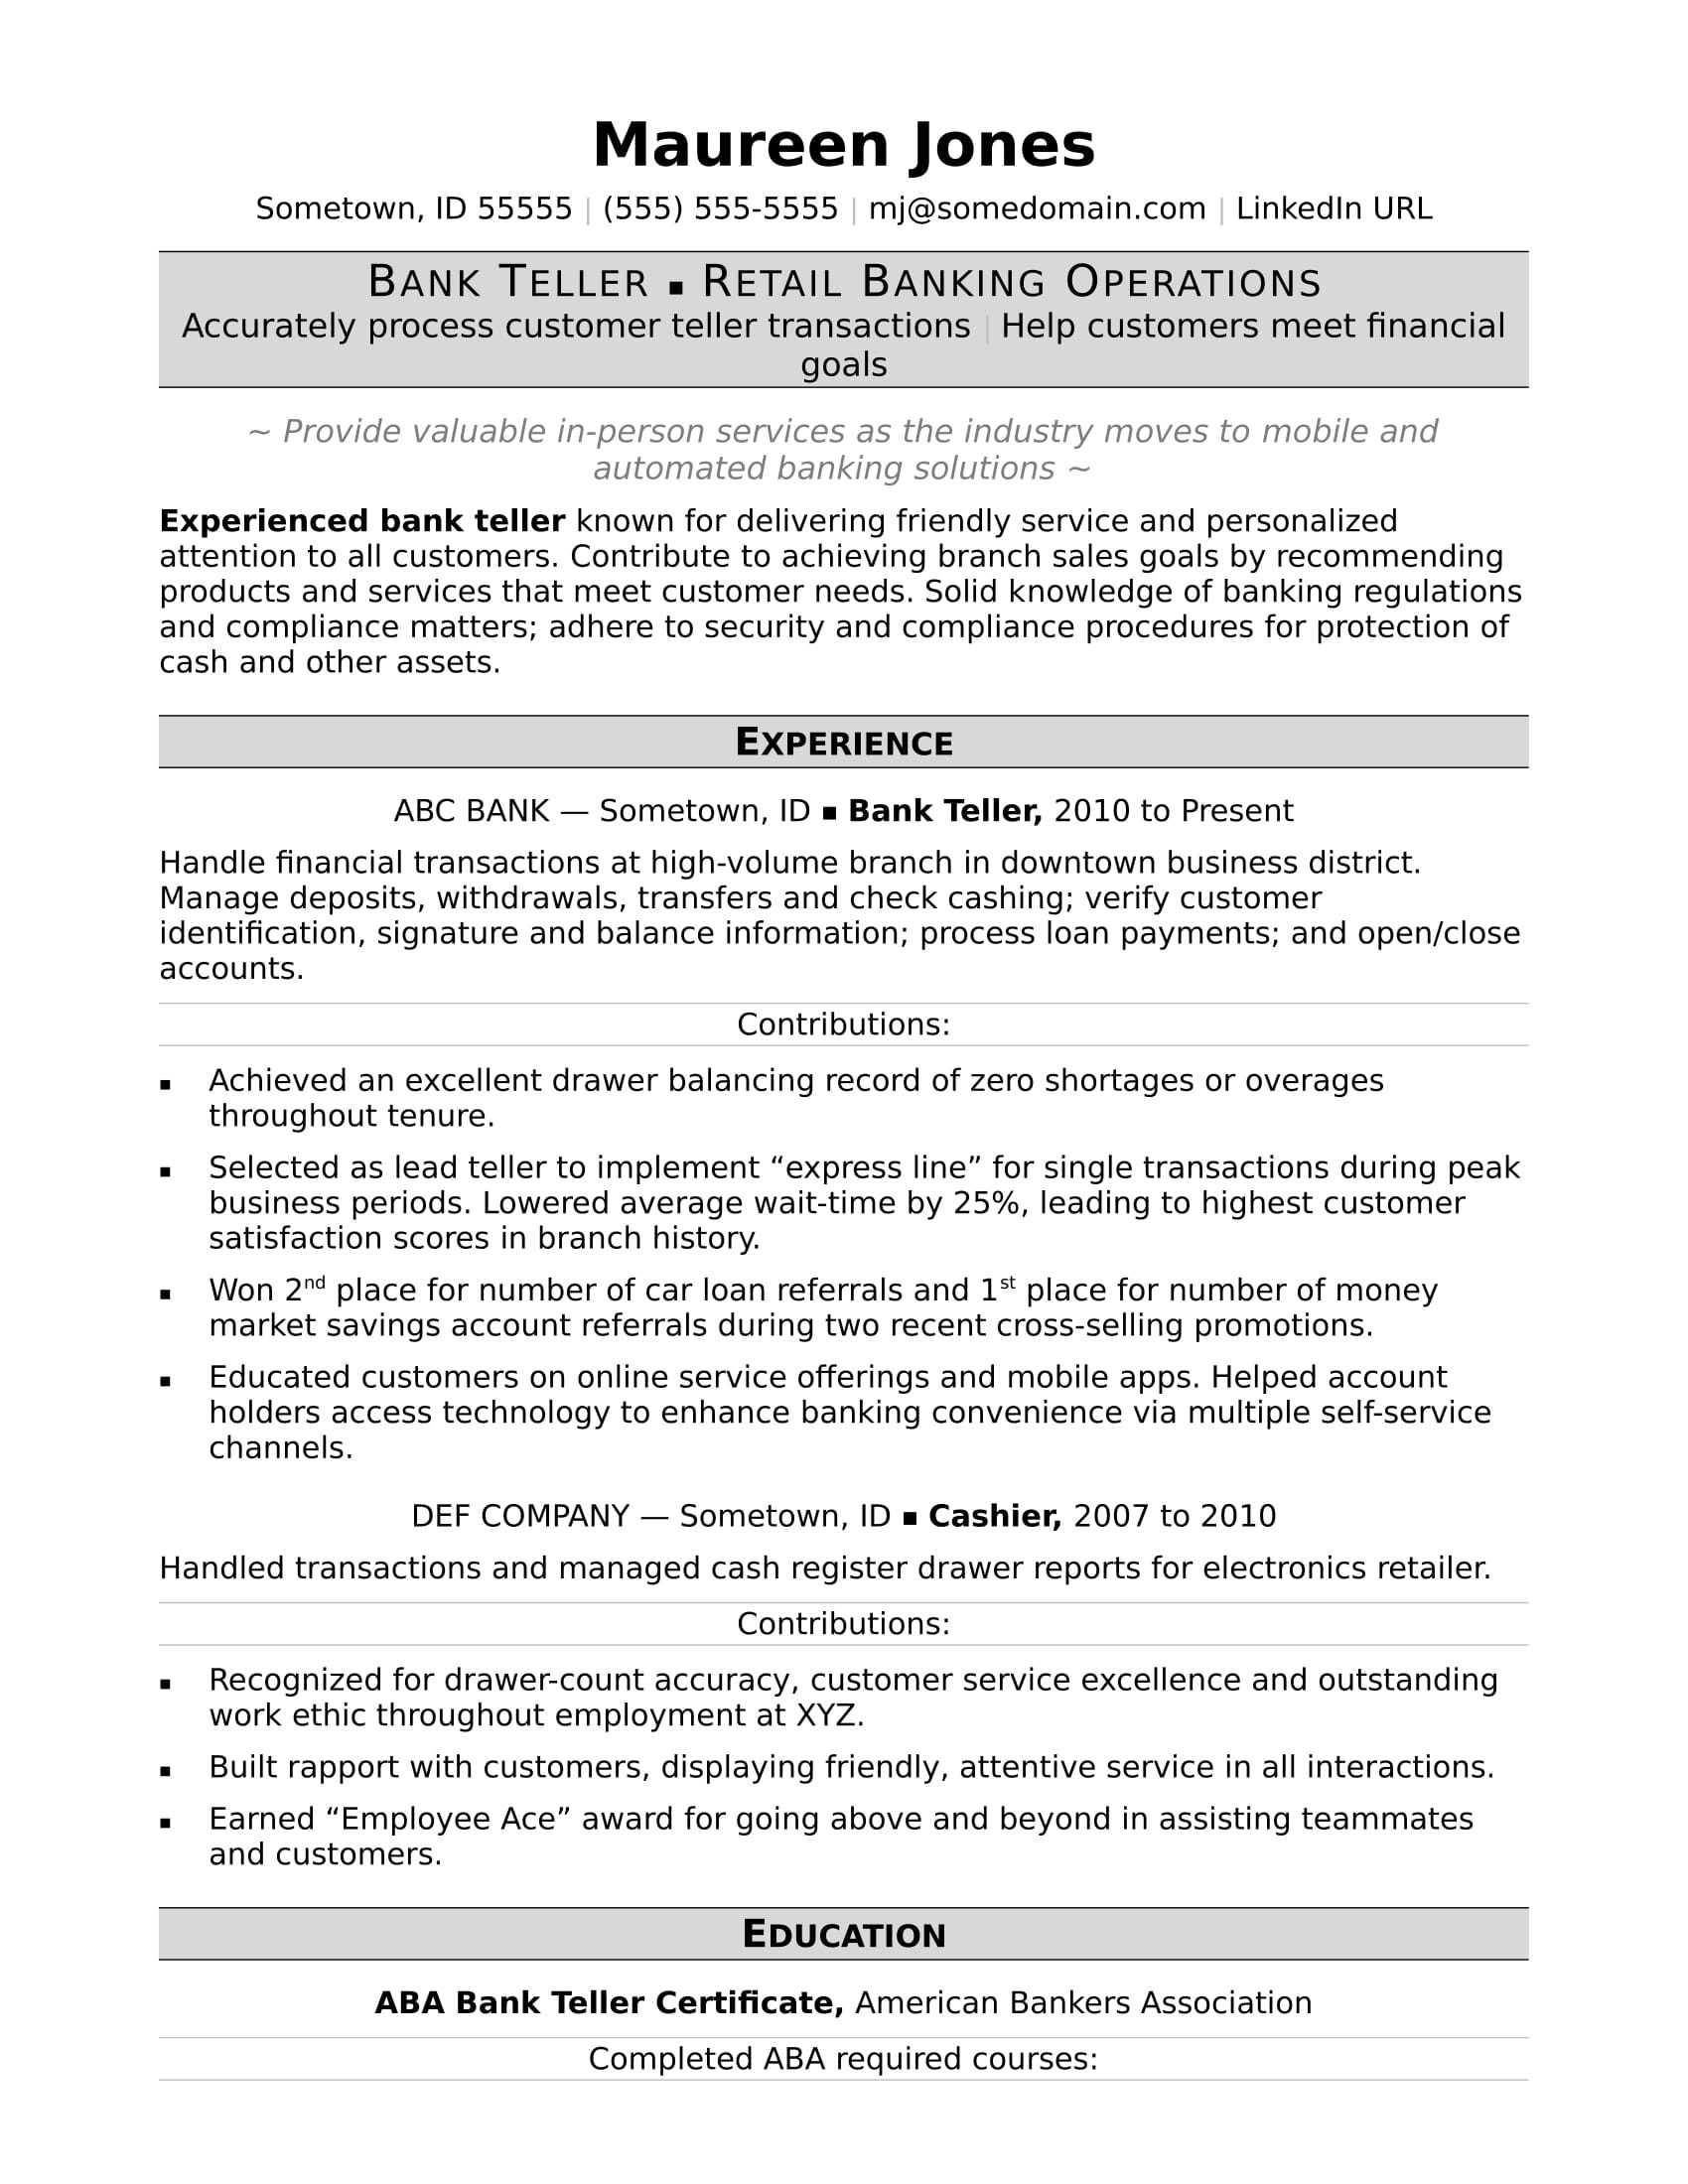 Free Sample Resume for Bank Teller Bank Teller Resume Sample